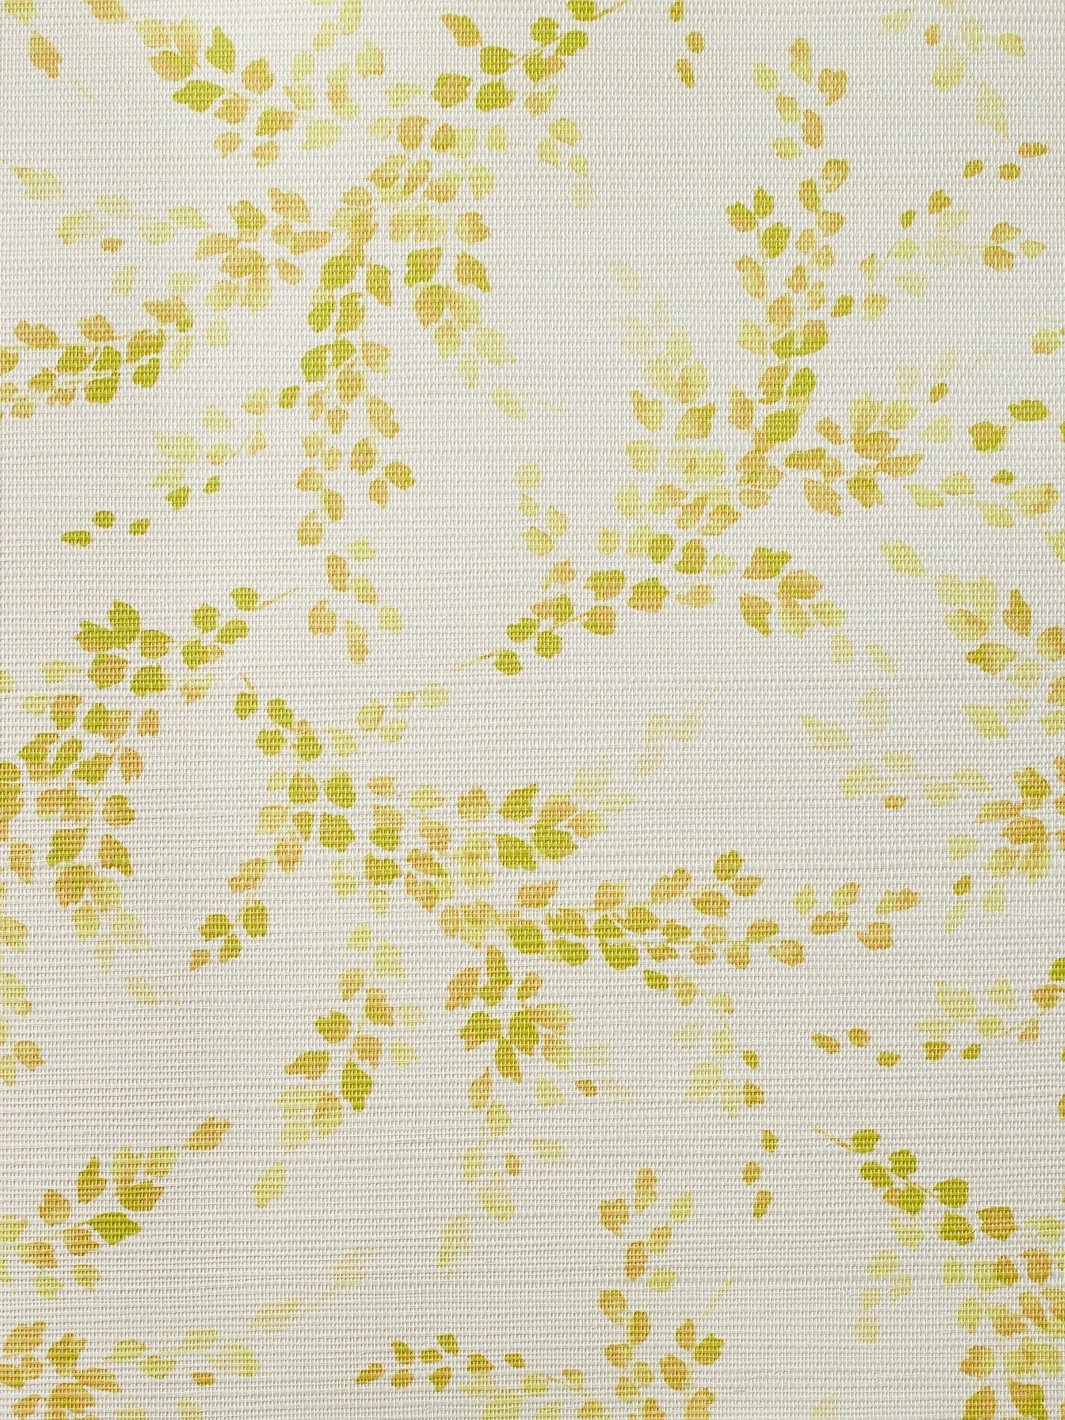 'Sweet Caroline' Grasscloth' Wallpaper by Wallshoppe - Yellow